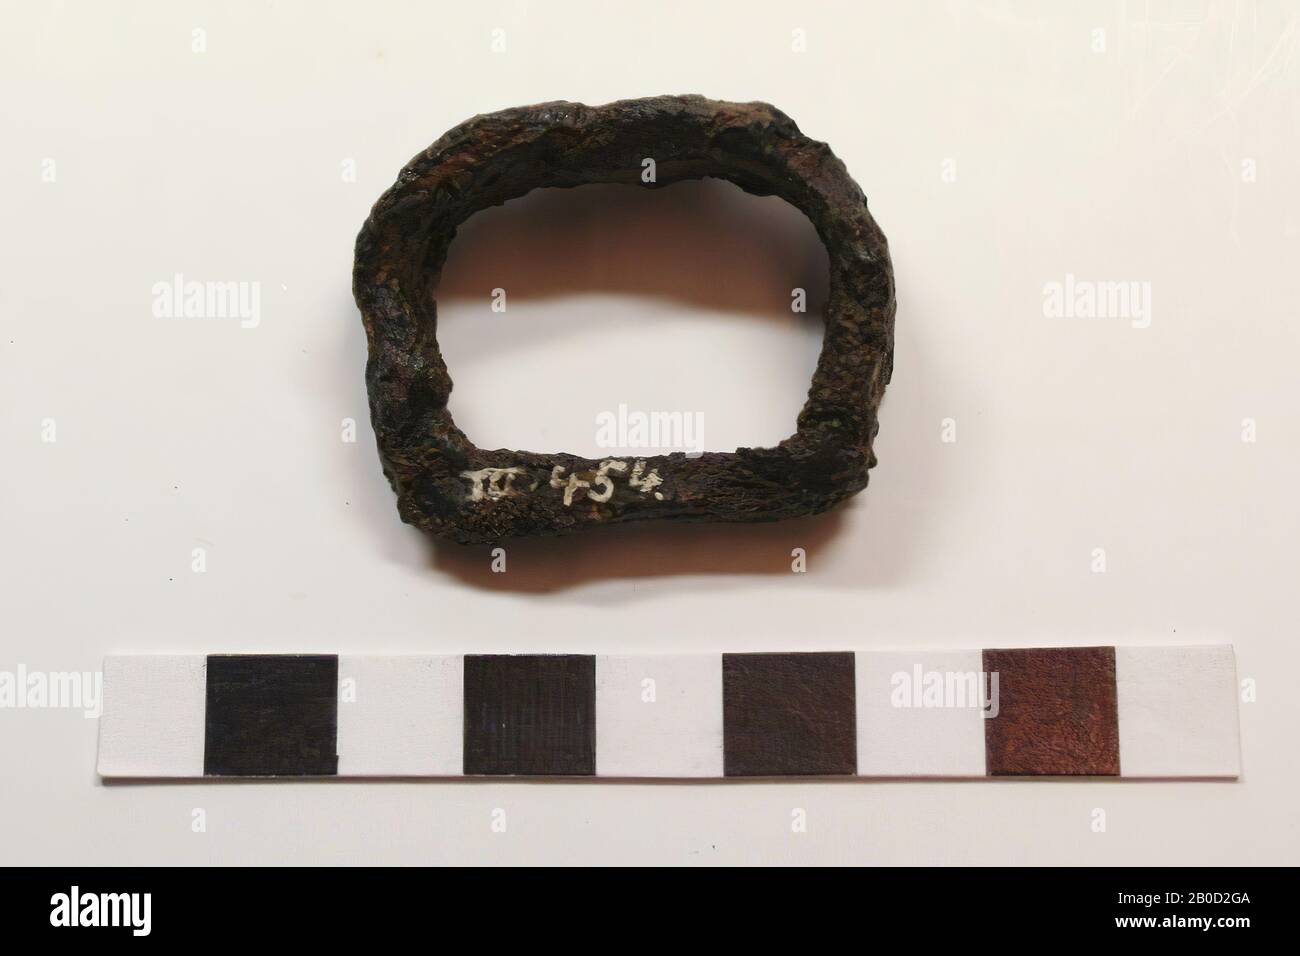 Número erróneo sobre el objeto, cierre, metal, hierro, 3.8 x 2.9 x 1.5 cm, medieval, Alemania, desconocido, desconocido, Andernach Foto de stock